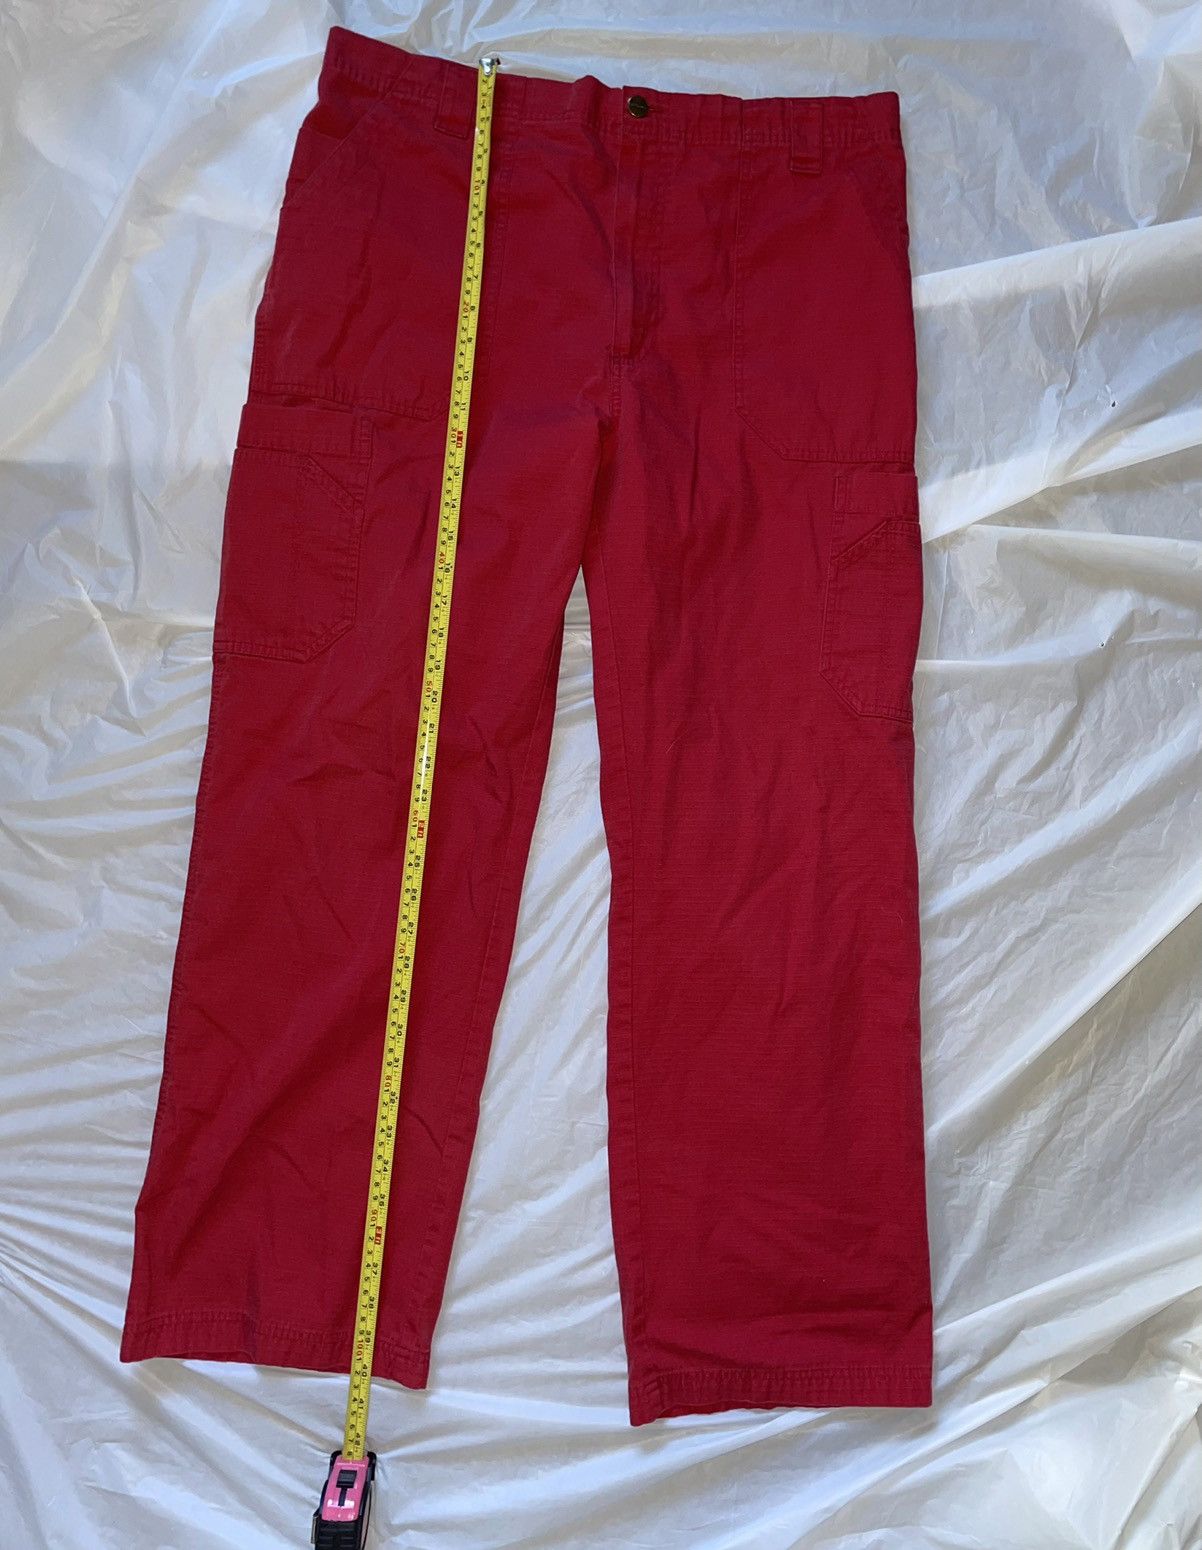 Carhartt Carhartt Lightweight Red Cargo Pants Size US 36 / EU 52 - 7 Thumbnail